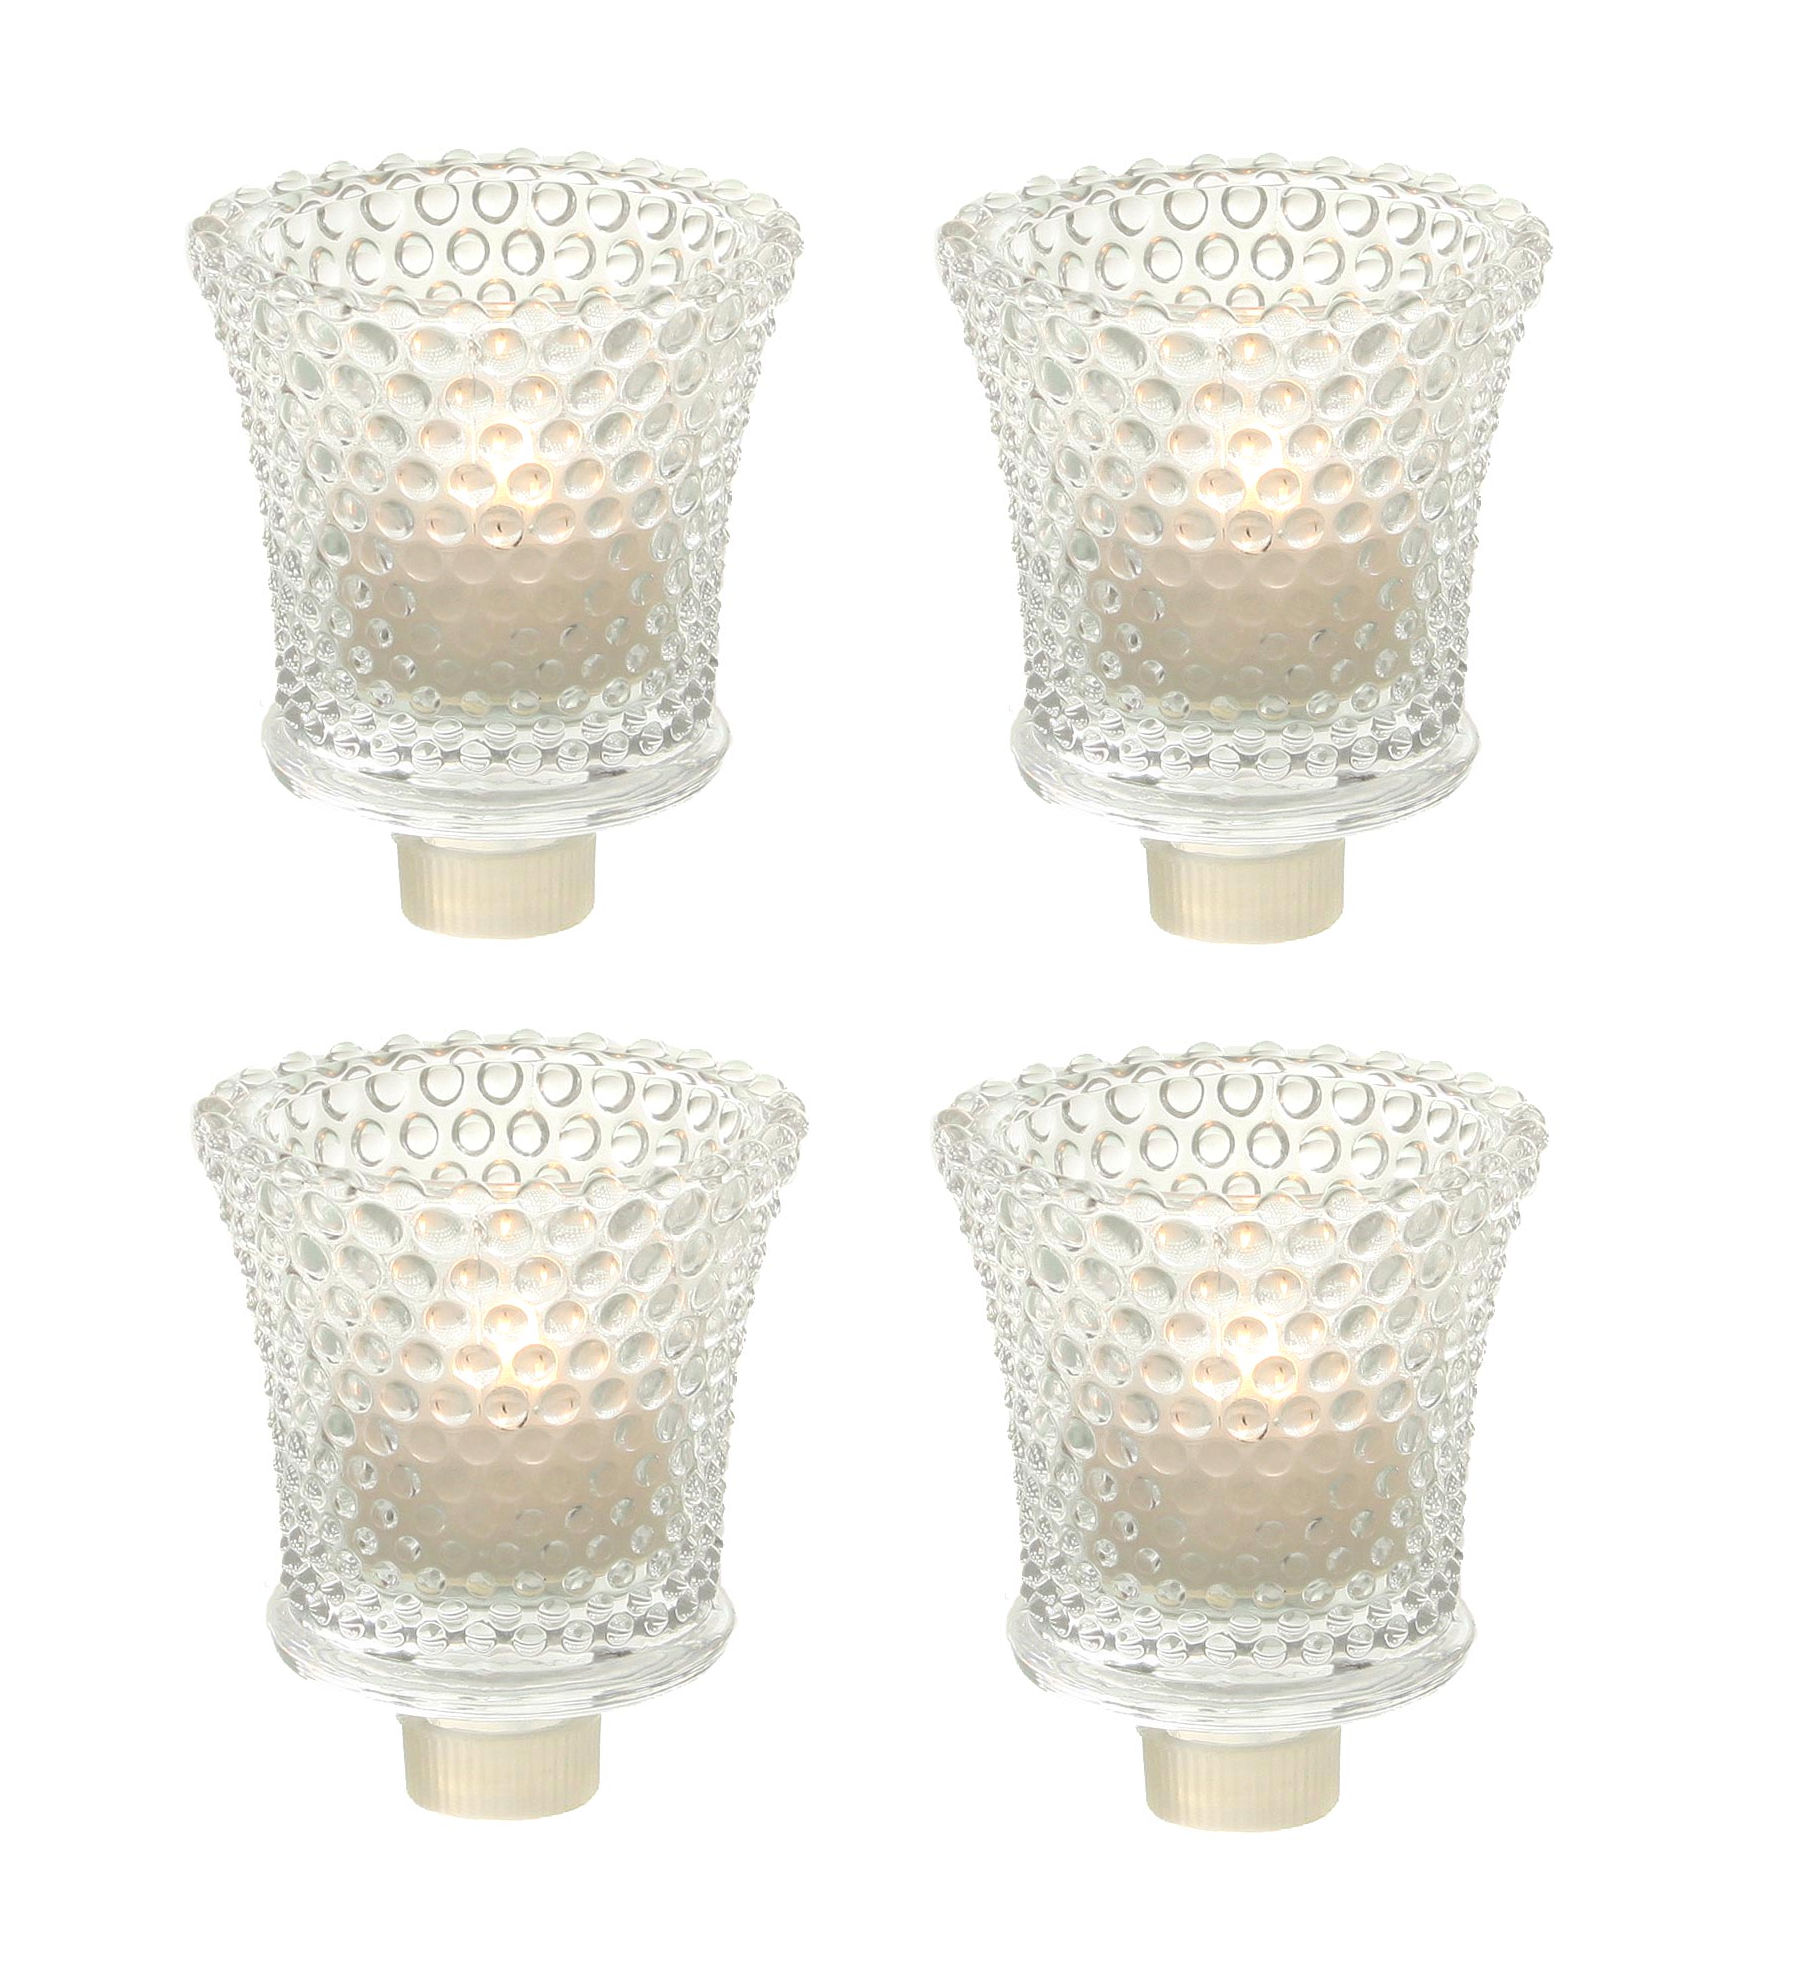 4x Teelichthalter für Kerzenständer - Partylicht Teelicht Halterung Glas Aufsatz